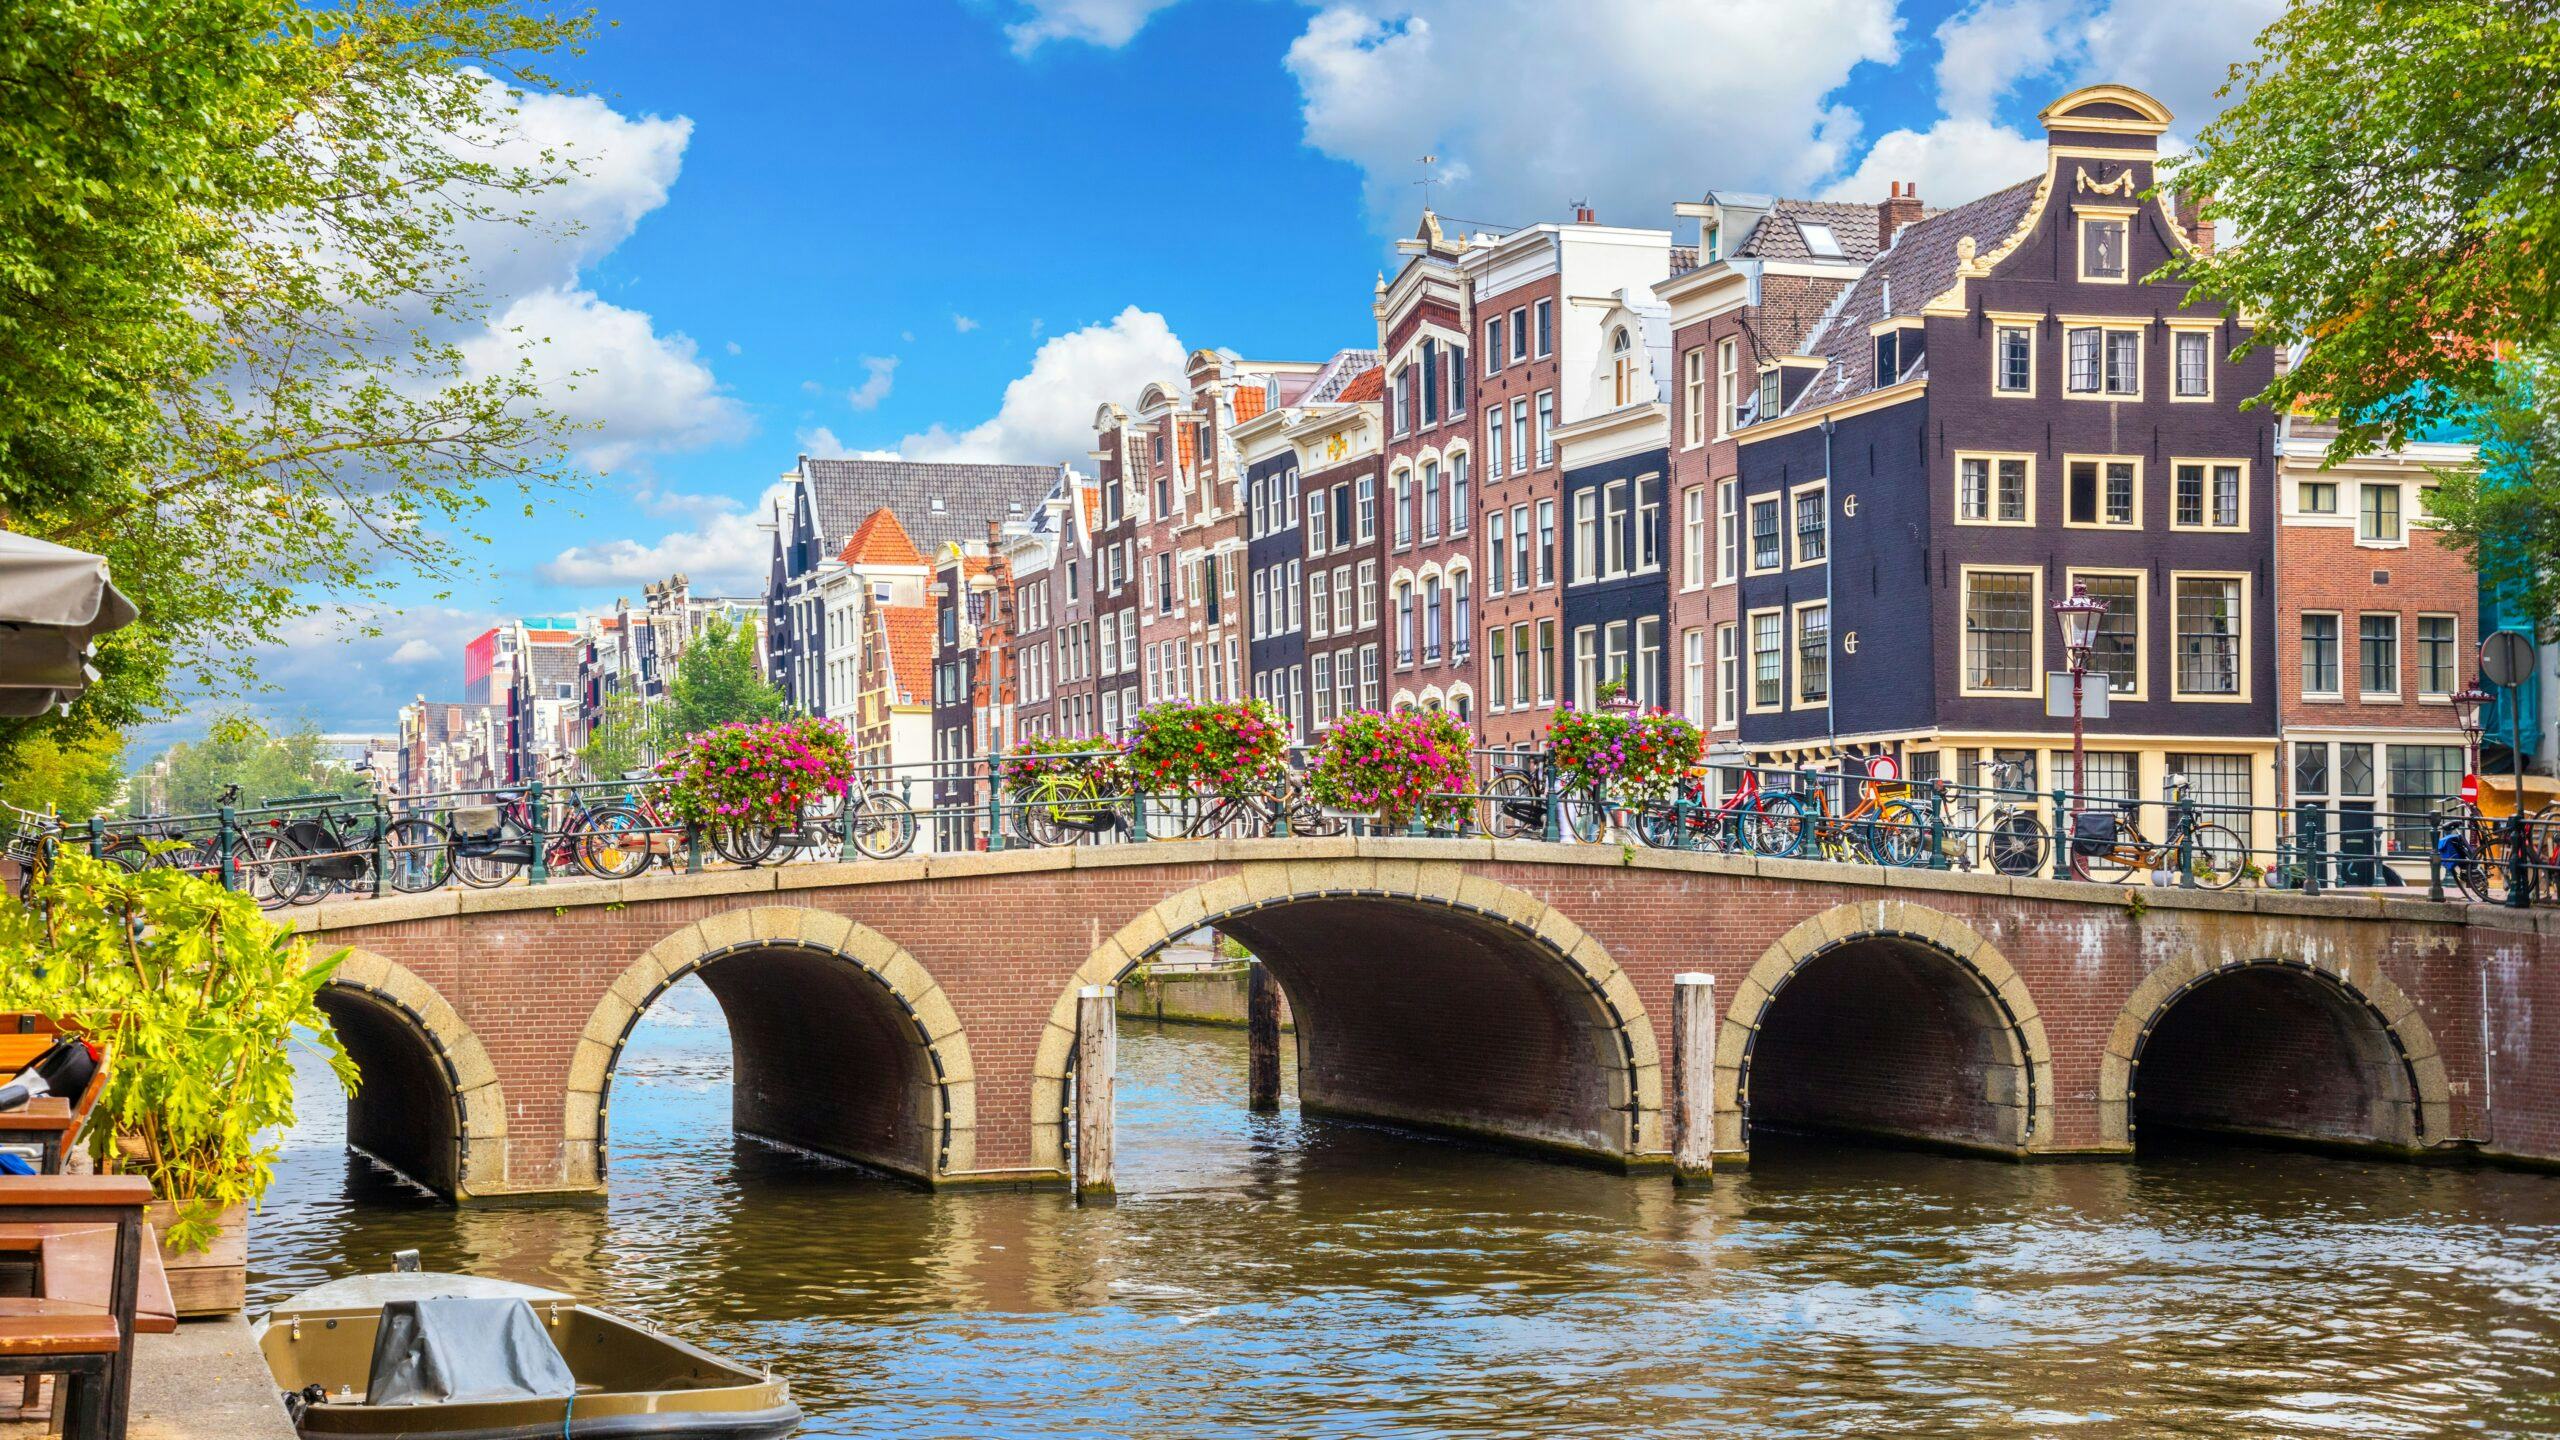 Huurders Netwerk Amsterdam pleit voor regulering van alle huurwoningen